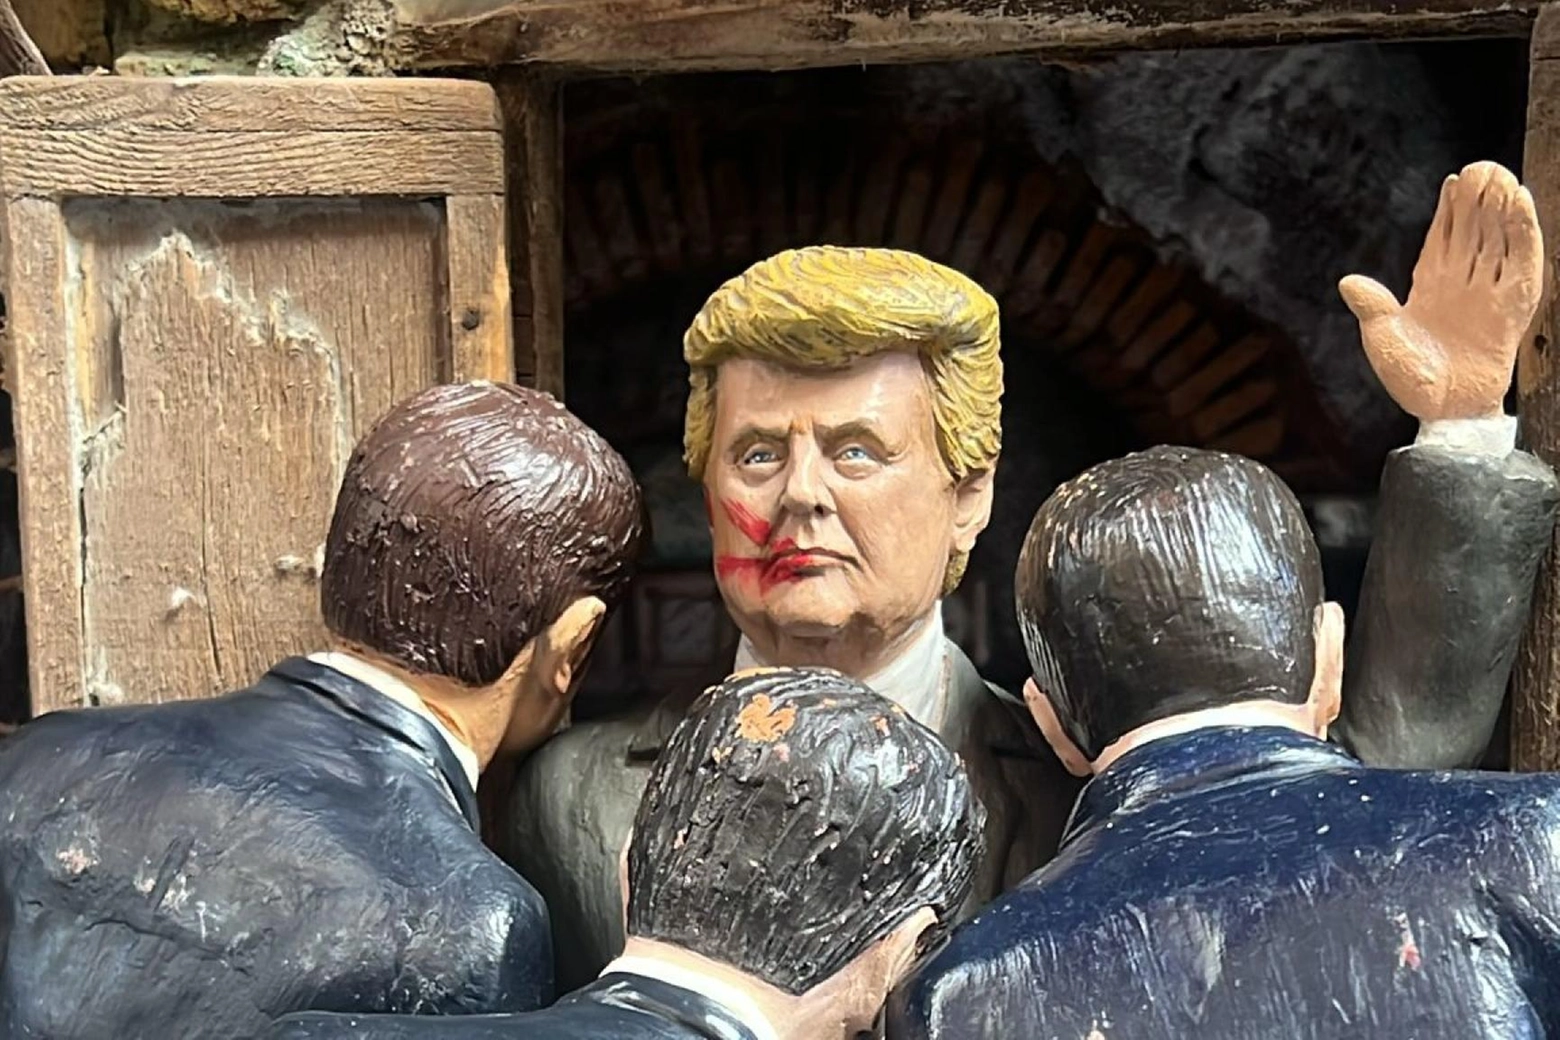 A Napoli è stata realizzata una statuina dedicata al fallito attentato a Donald Trump